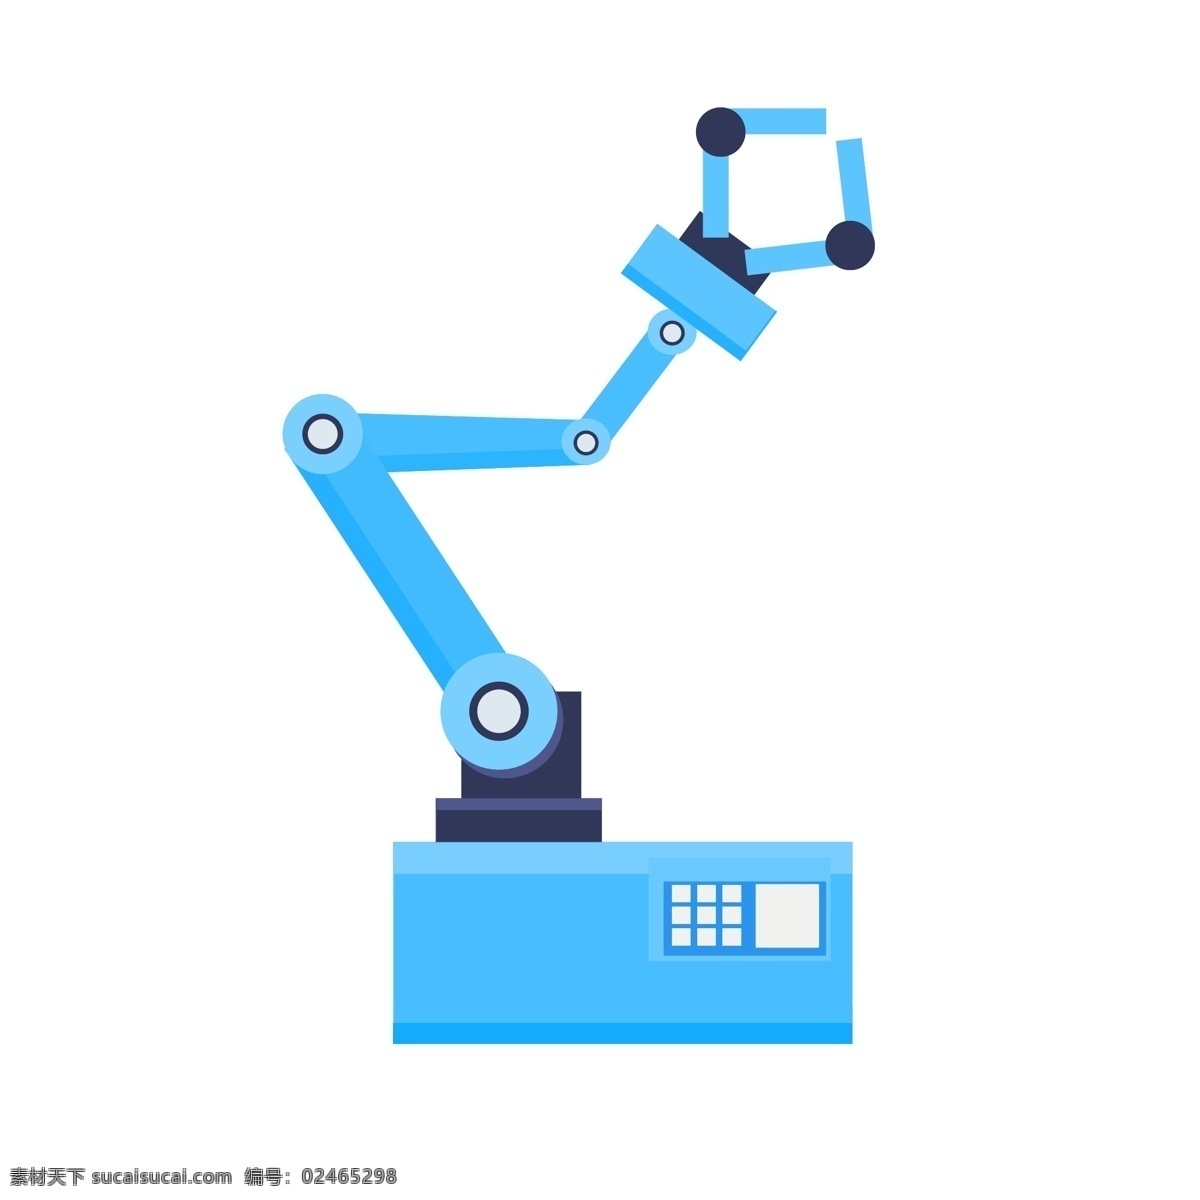 科技 机器 手臂 人工智能 蓝色 装饰 矢量 商用 图标 装饰图标 机器人 机器手